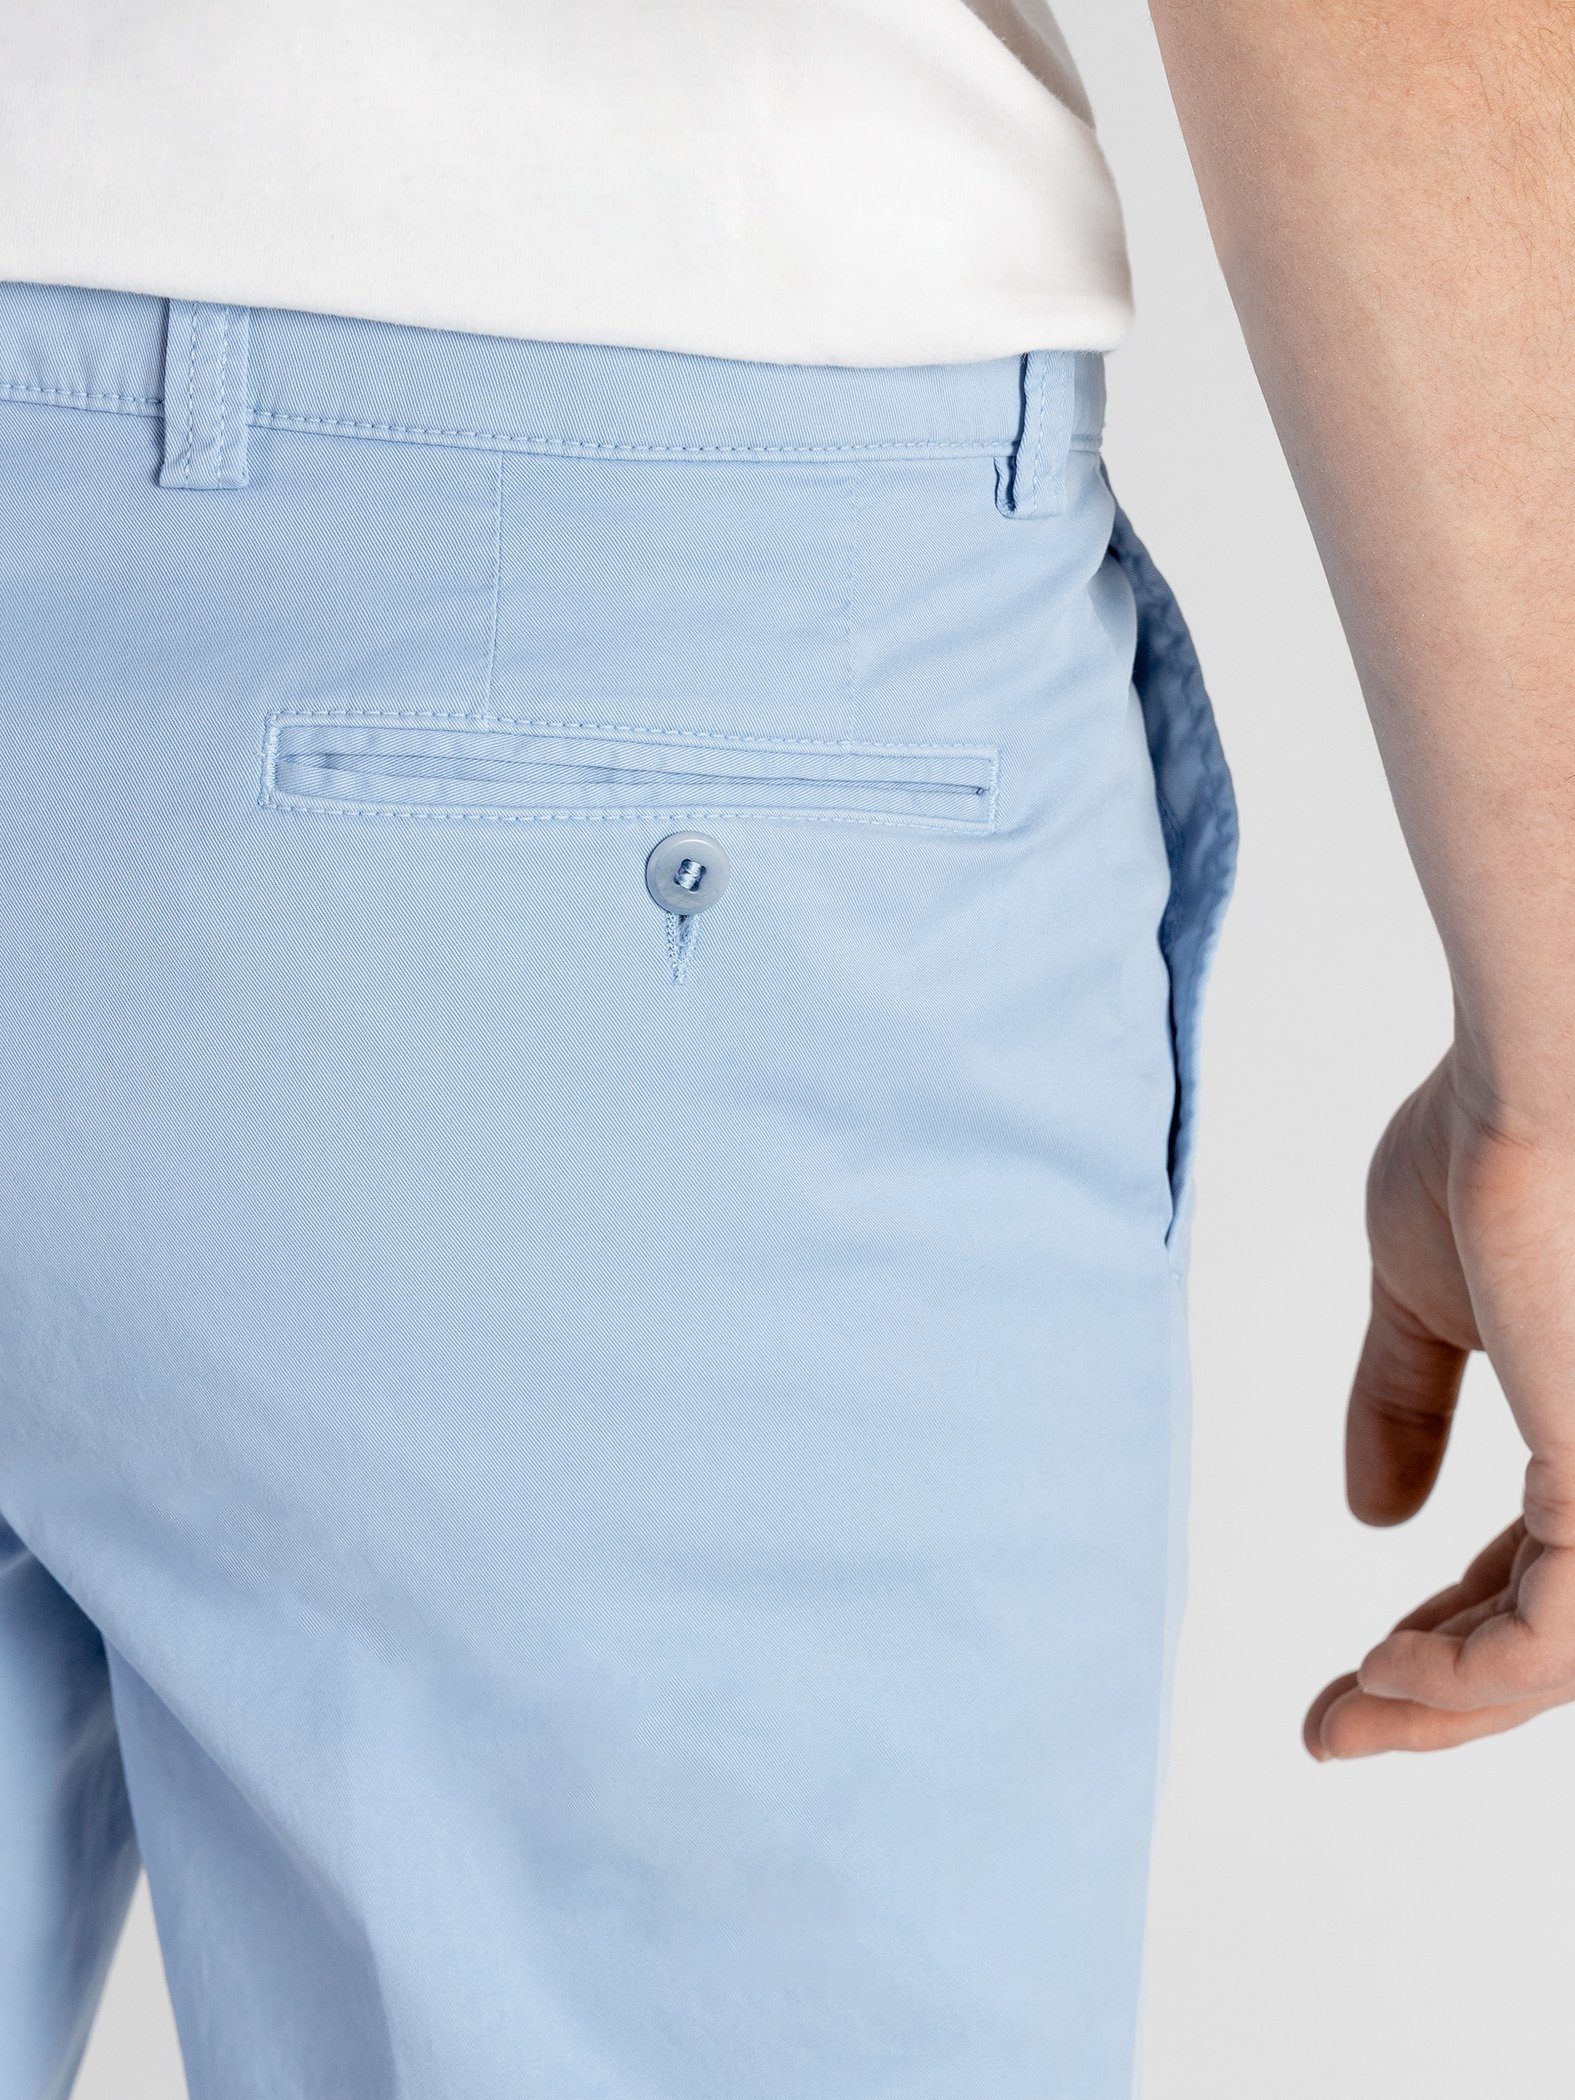 Shorts mit GOTS-zertifiziert TwoMates Shorts Farbauswahl, elastischem hellblau Bund,